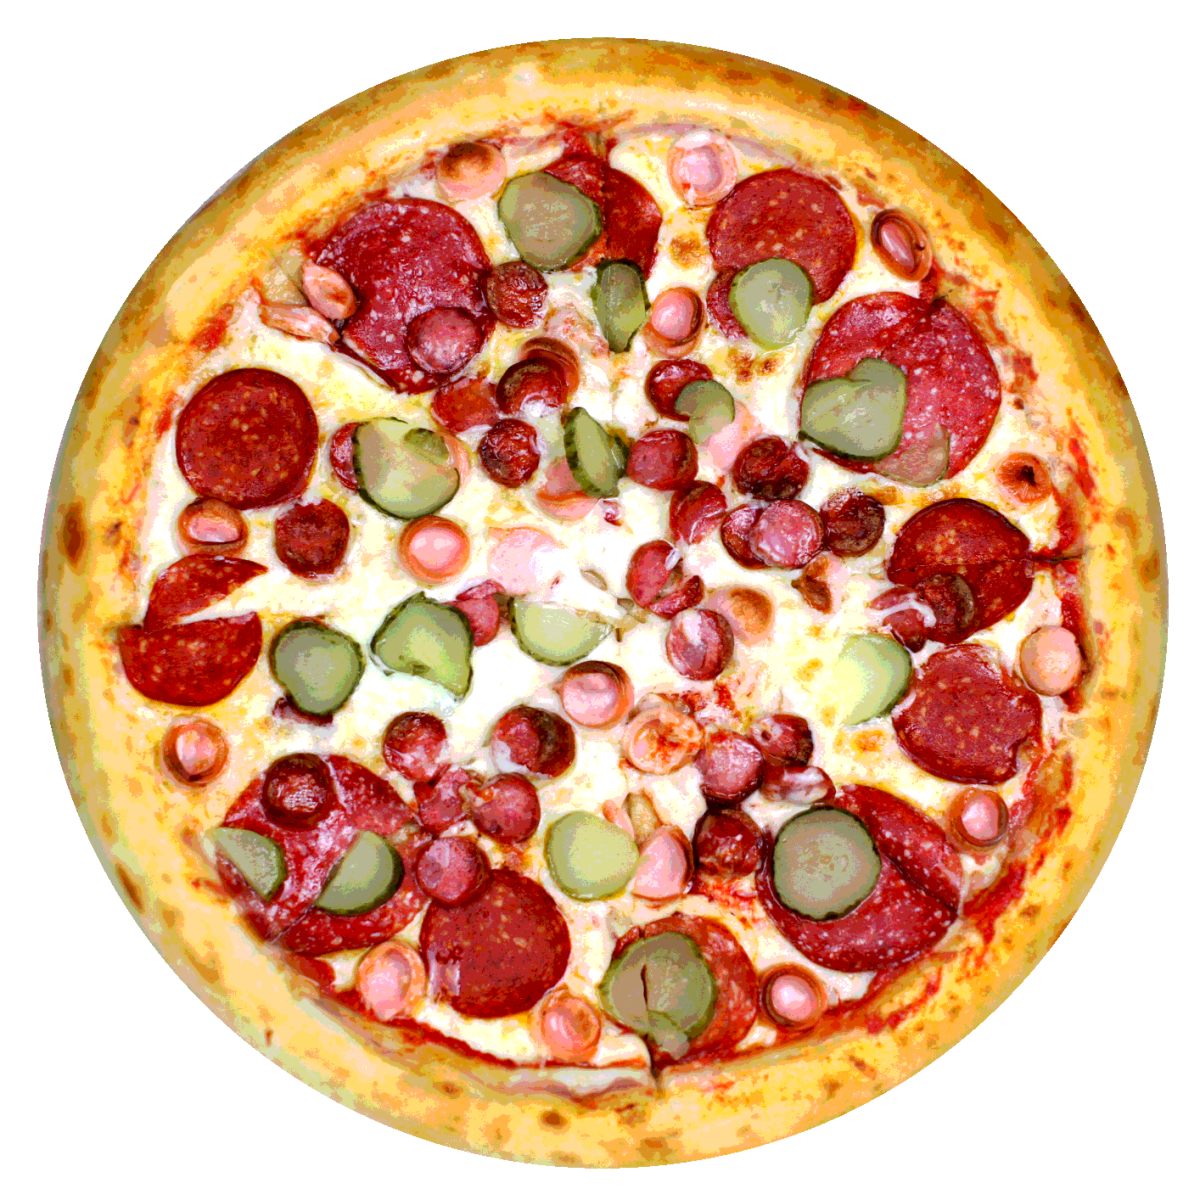 состав колбасы пиццы пепперони фото 25